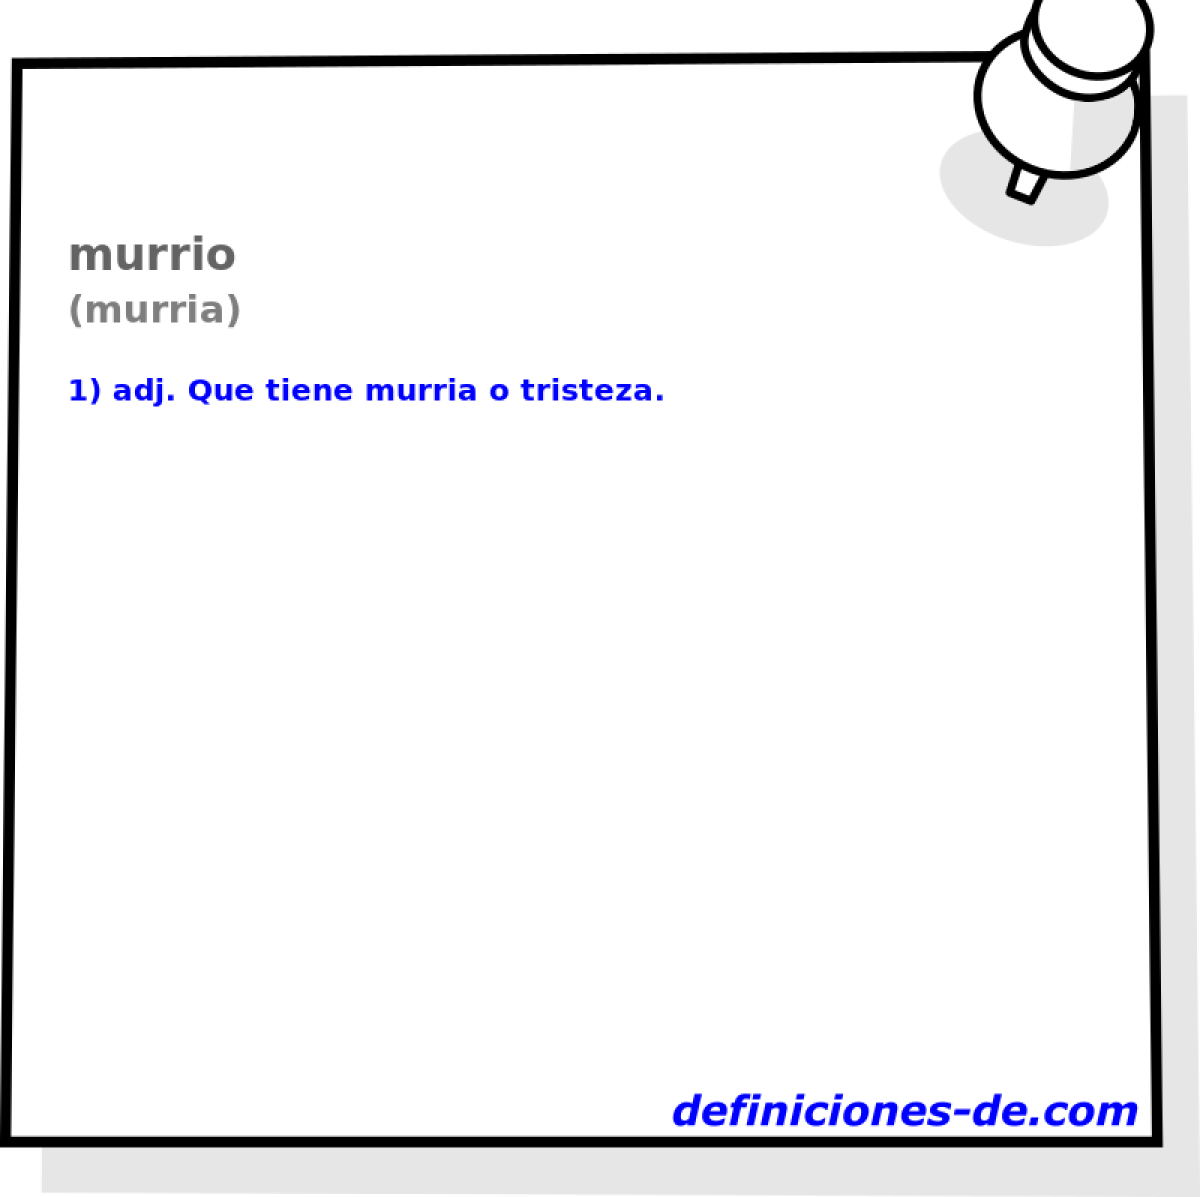 murrio (murria)